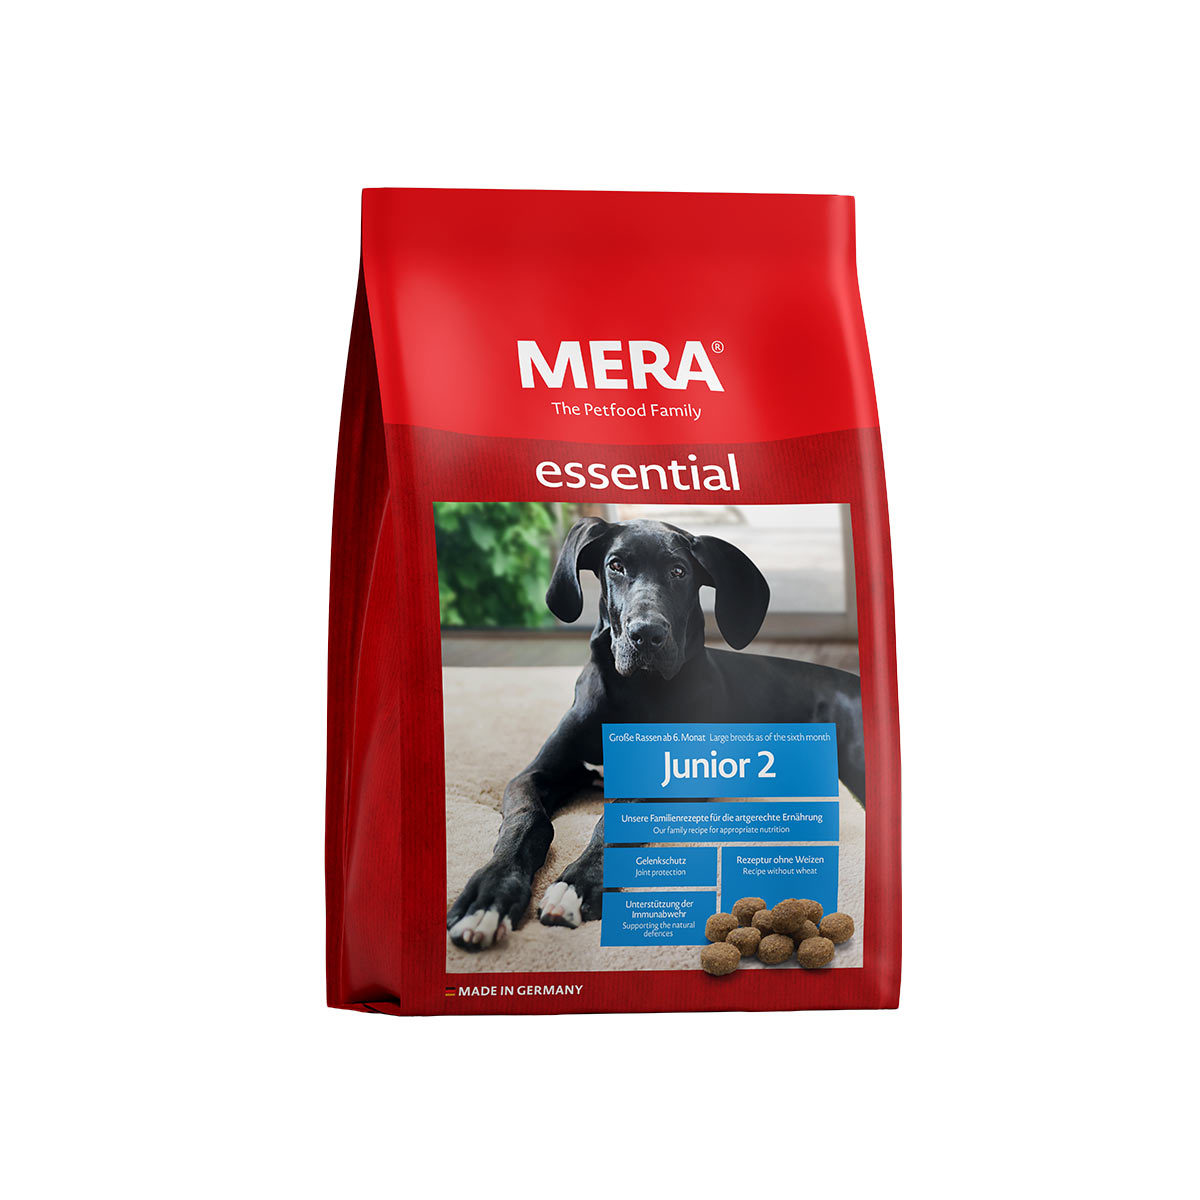 MERA essential Junior 2 12,5 kg